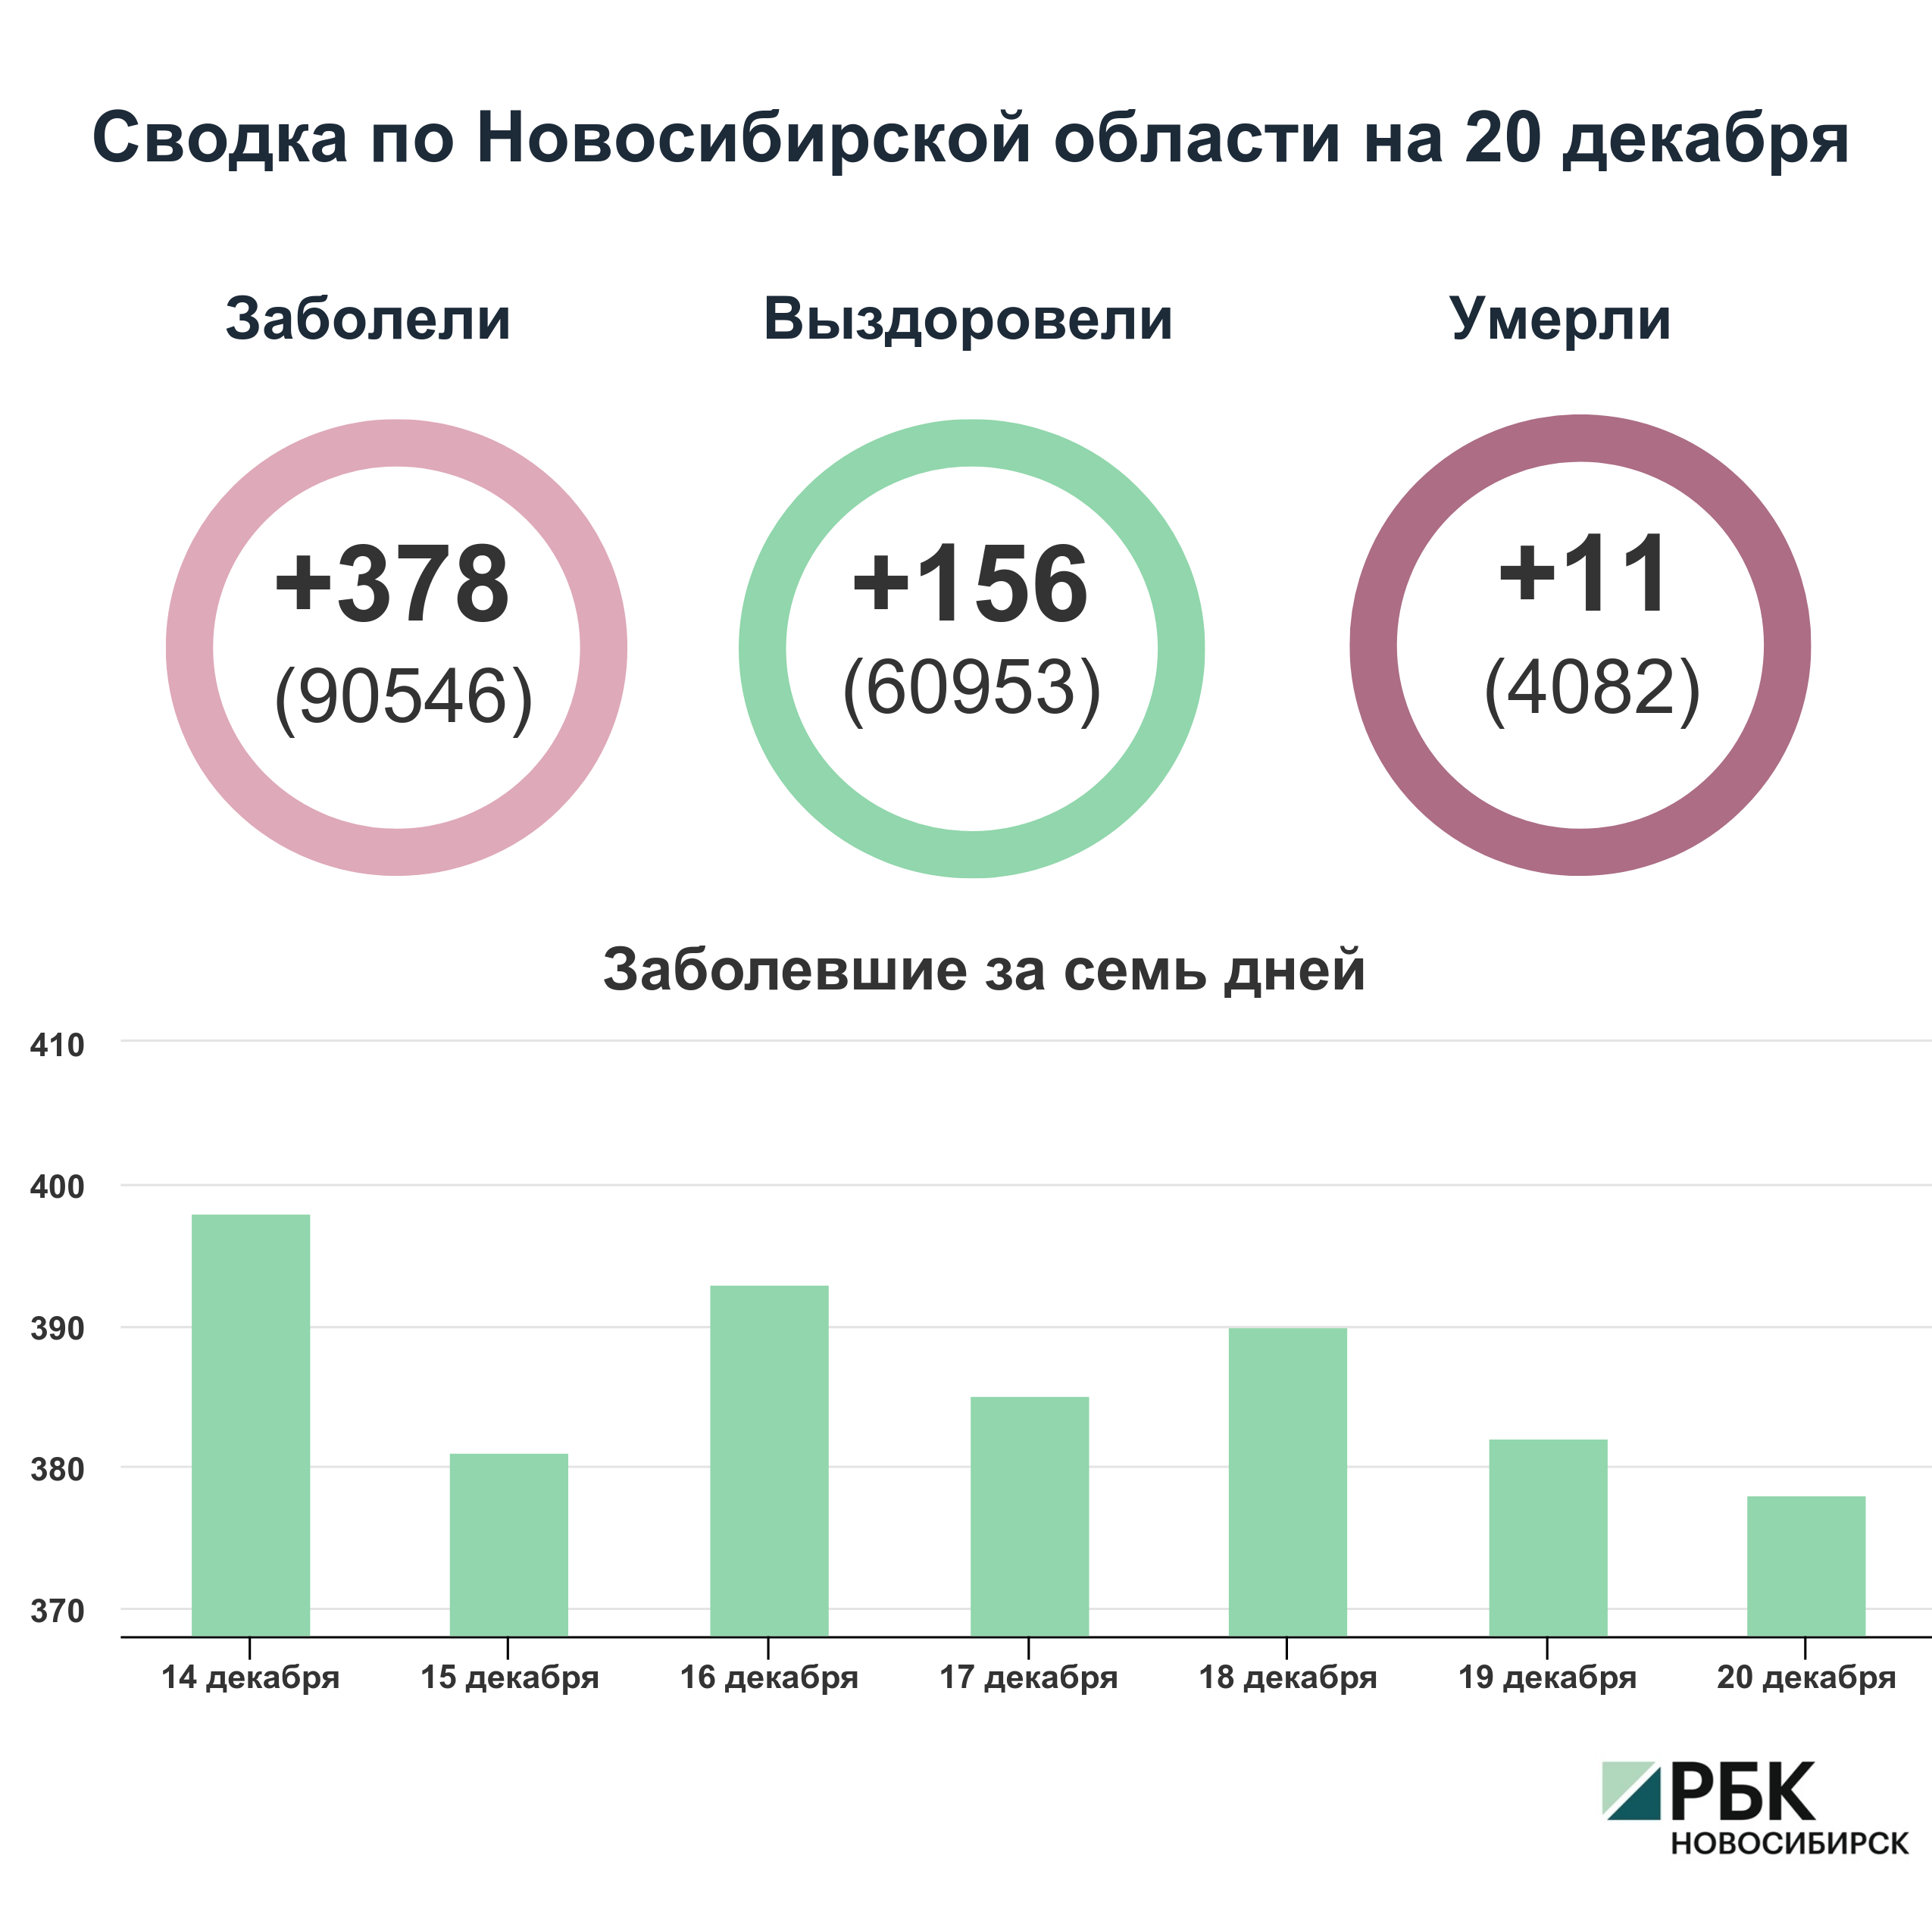 Коронавирус в Новосибирске: сводка на 20 декабря